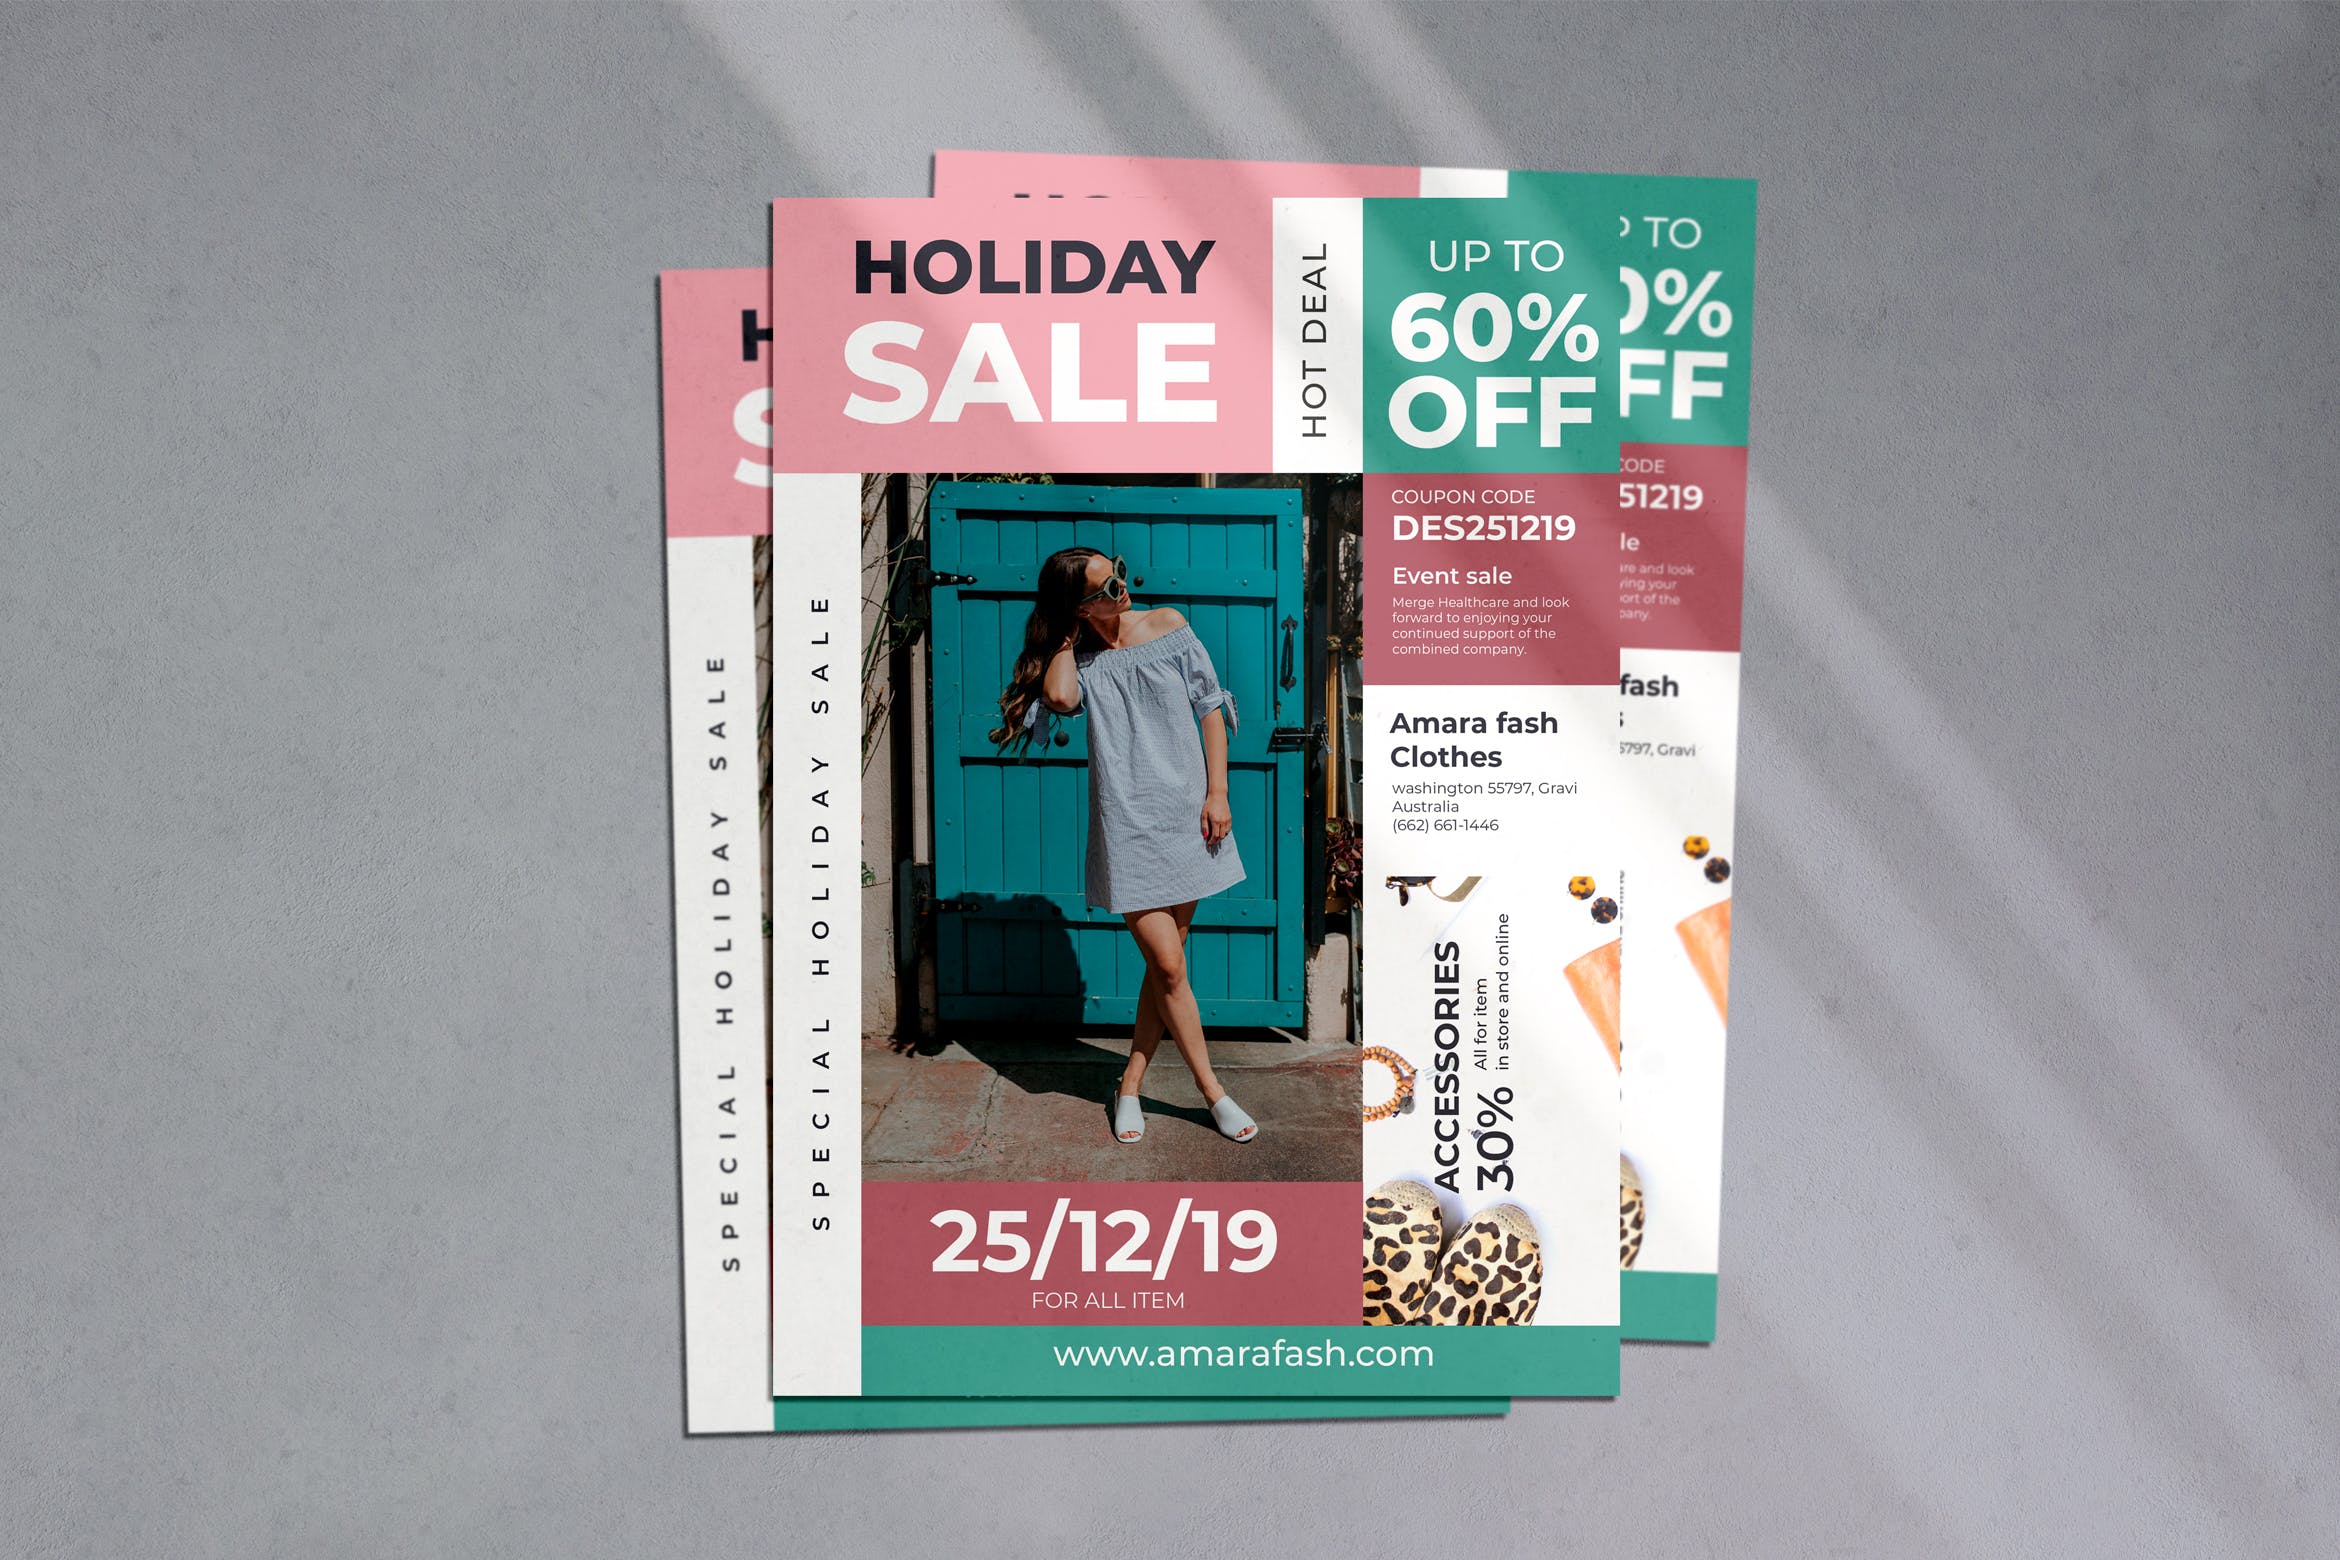 假日特别促销活动宣传单设计模板 Holiday Sale Flyer插图